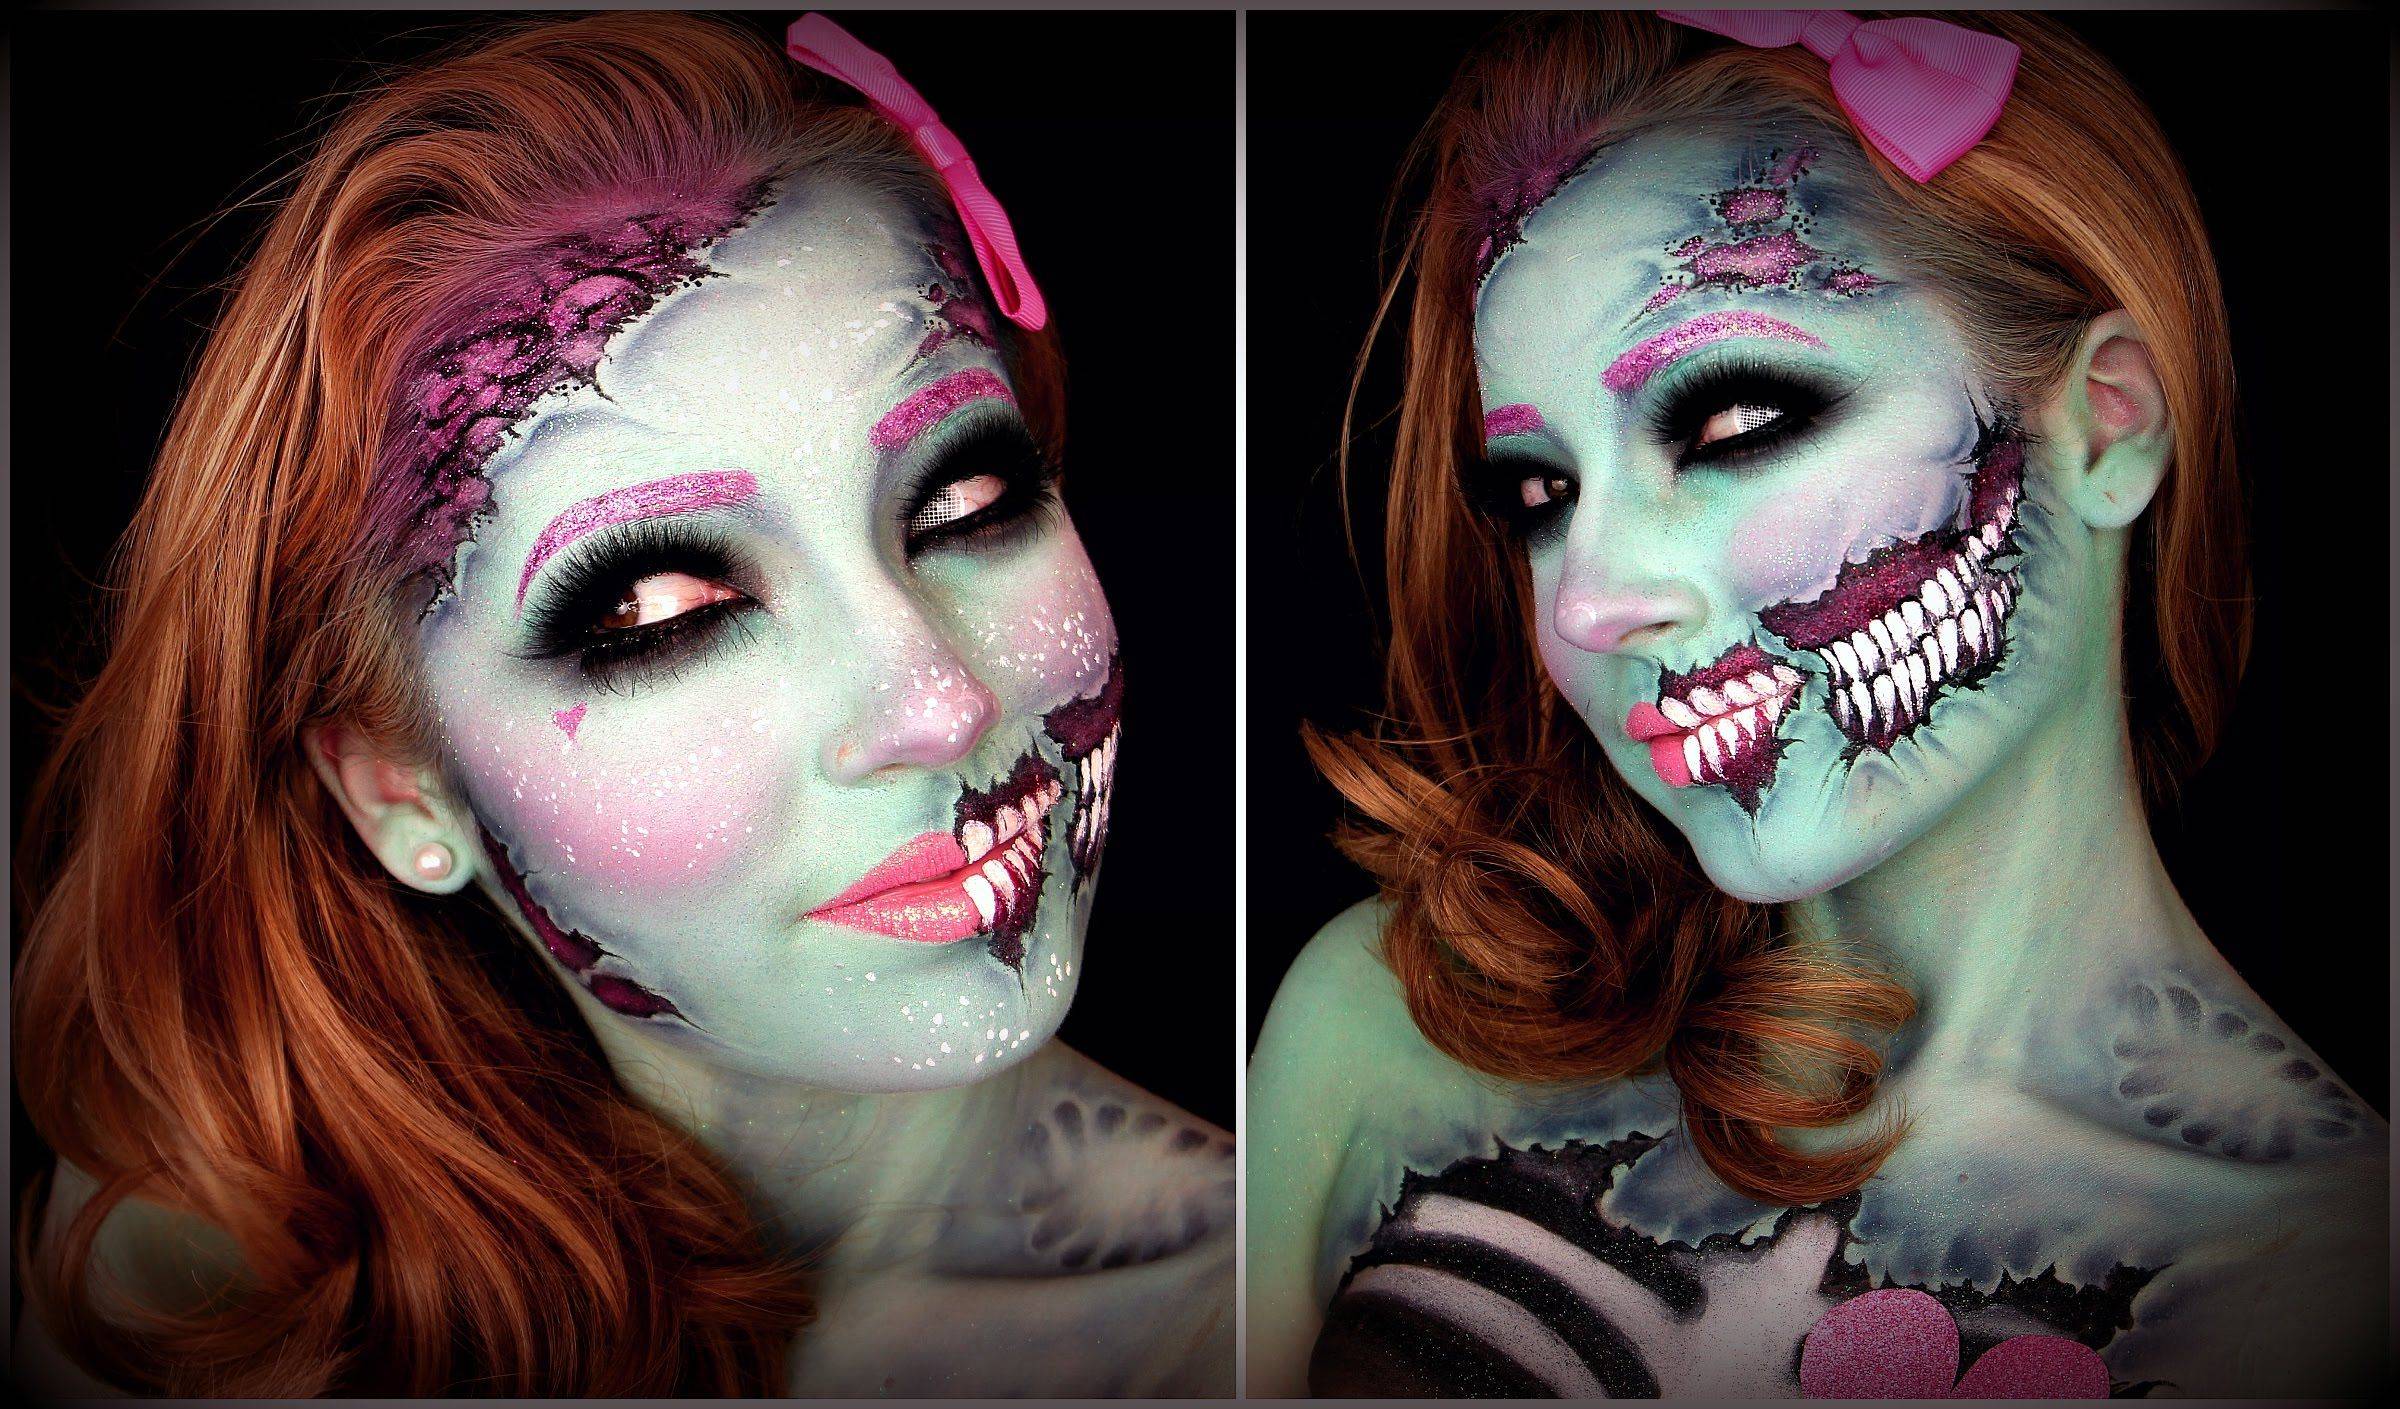 Макияж на хэллоуин для девушек, детей и девочек 7-12 лет: как сделать самый страшный макияж своими руками в домашних условиях для ведьмы, вампира, скелета, куклы